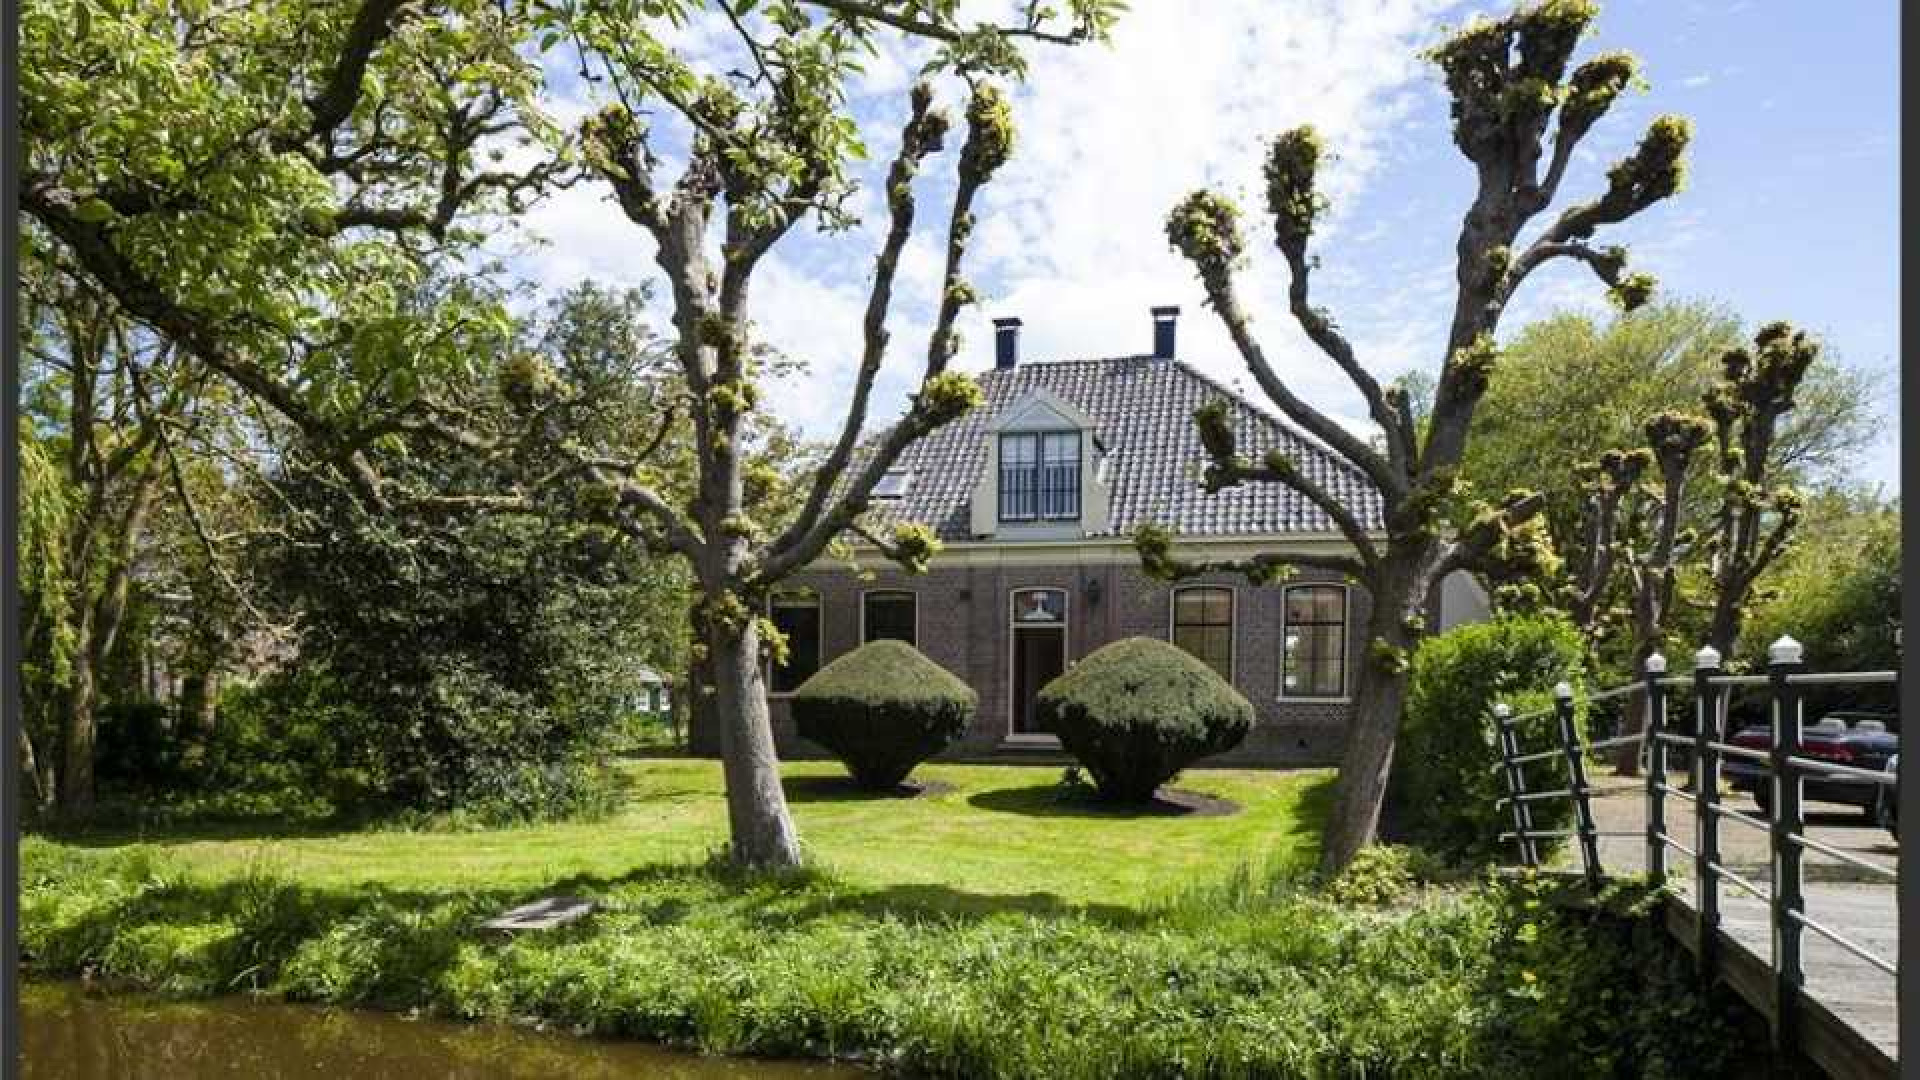 Trijntje Oosterhuis maakt eindelijk vraagprijs van haar villa bekend. Zie foto's 1